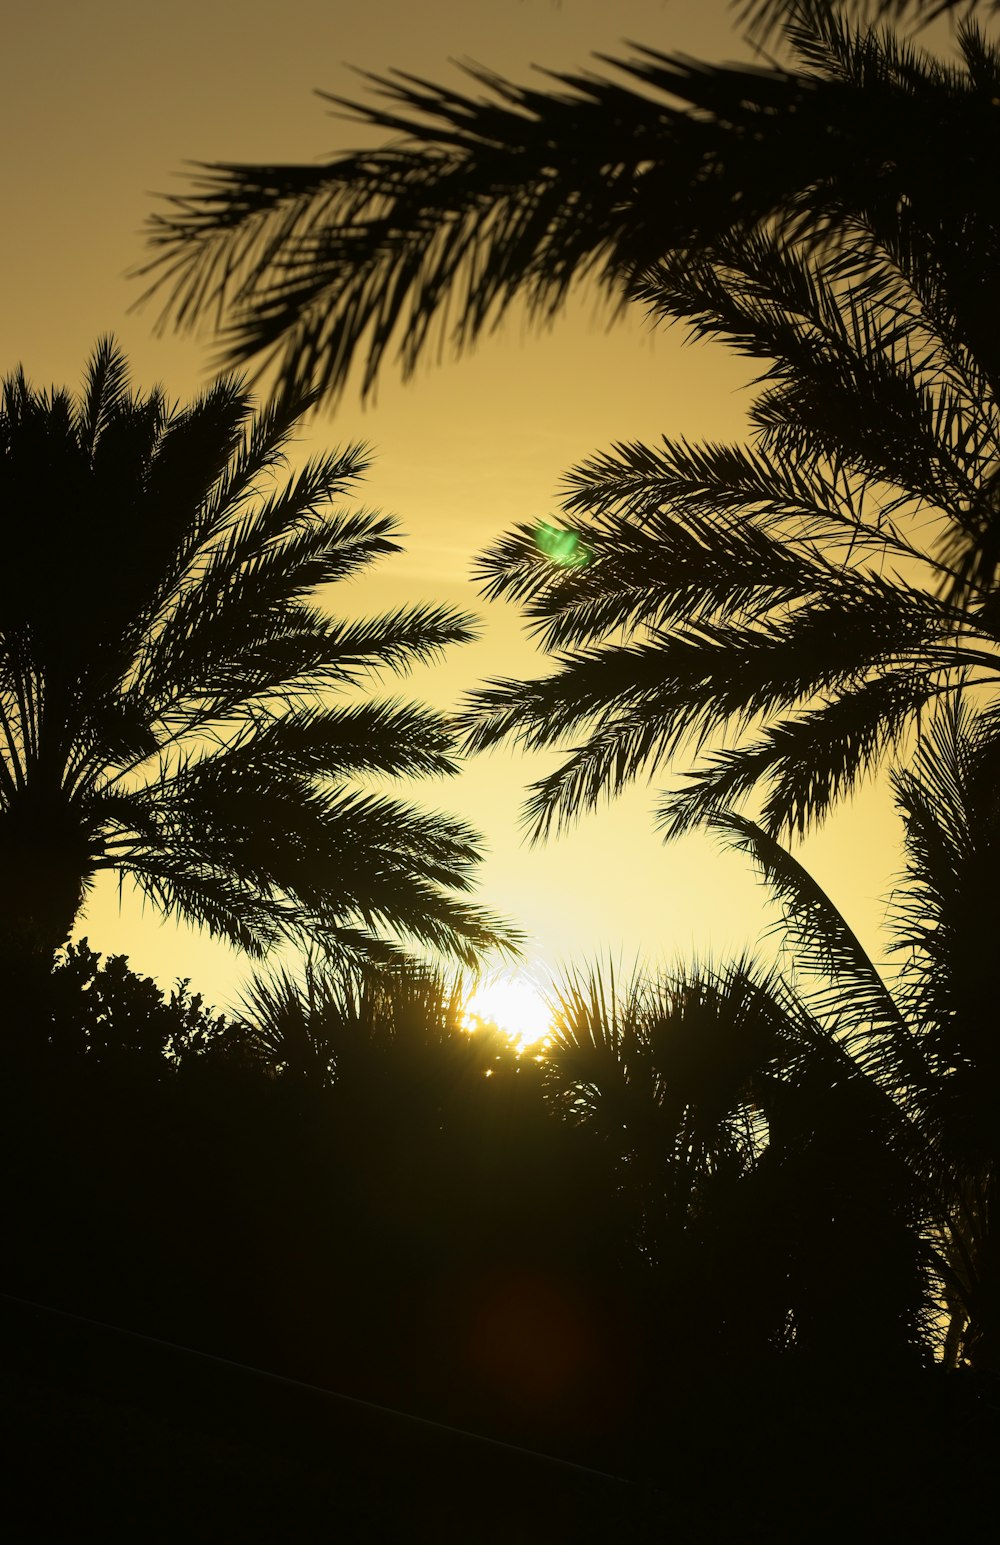 o sol está se pondo atrás de algumas palmeiras